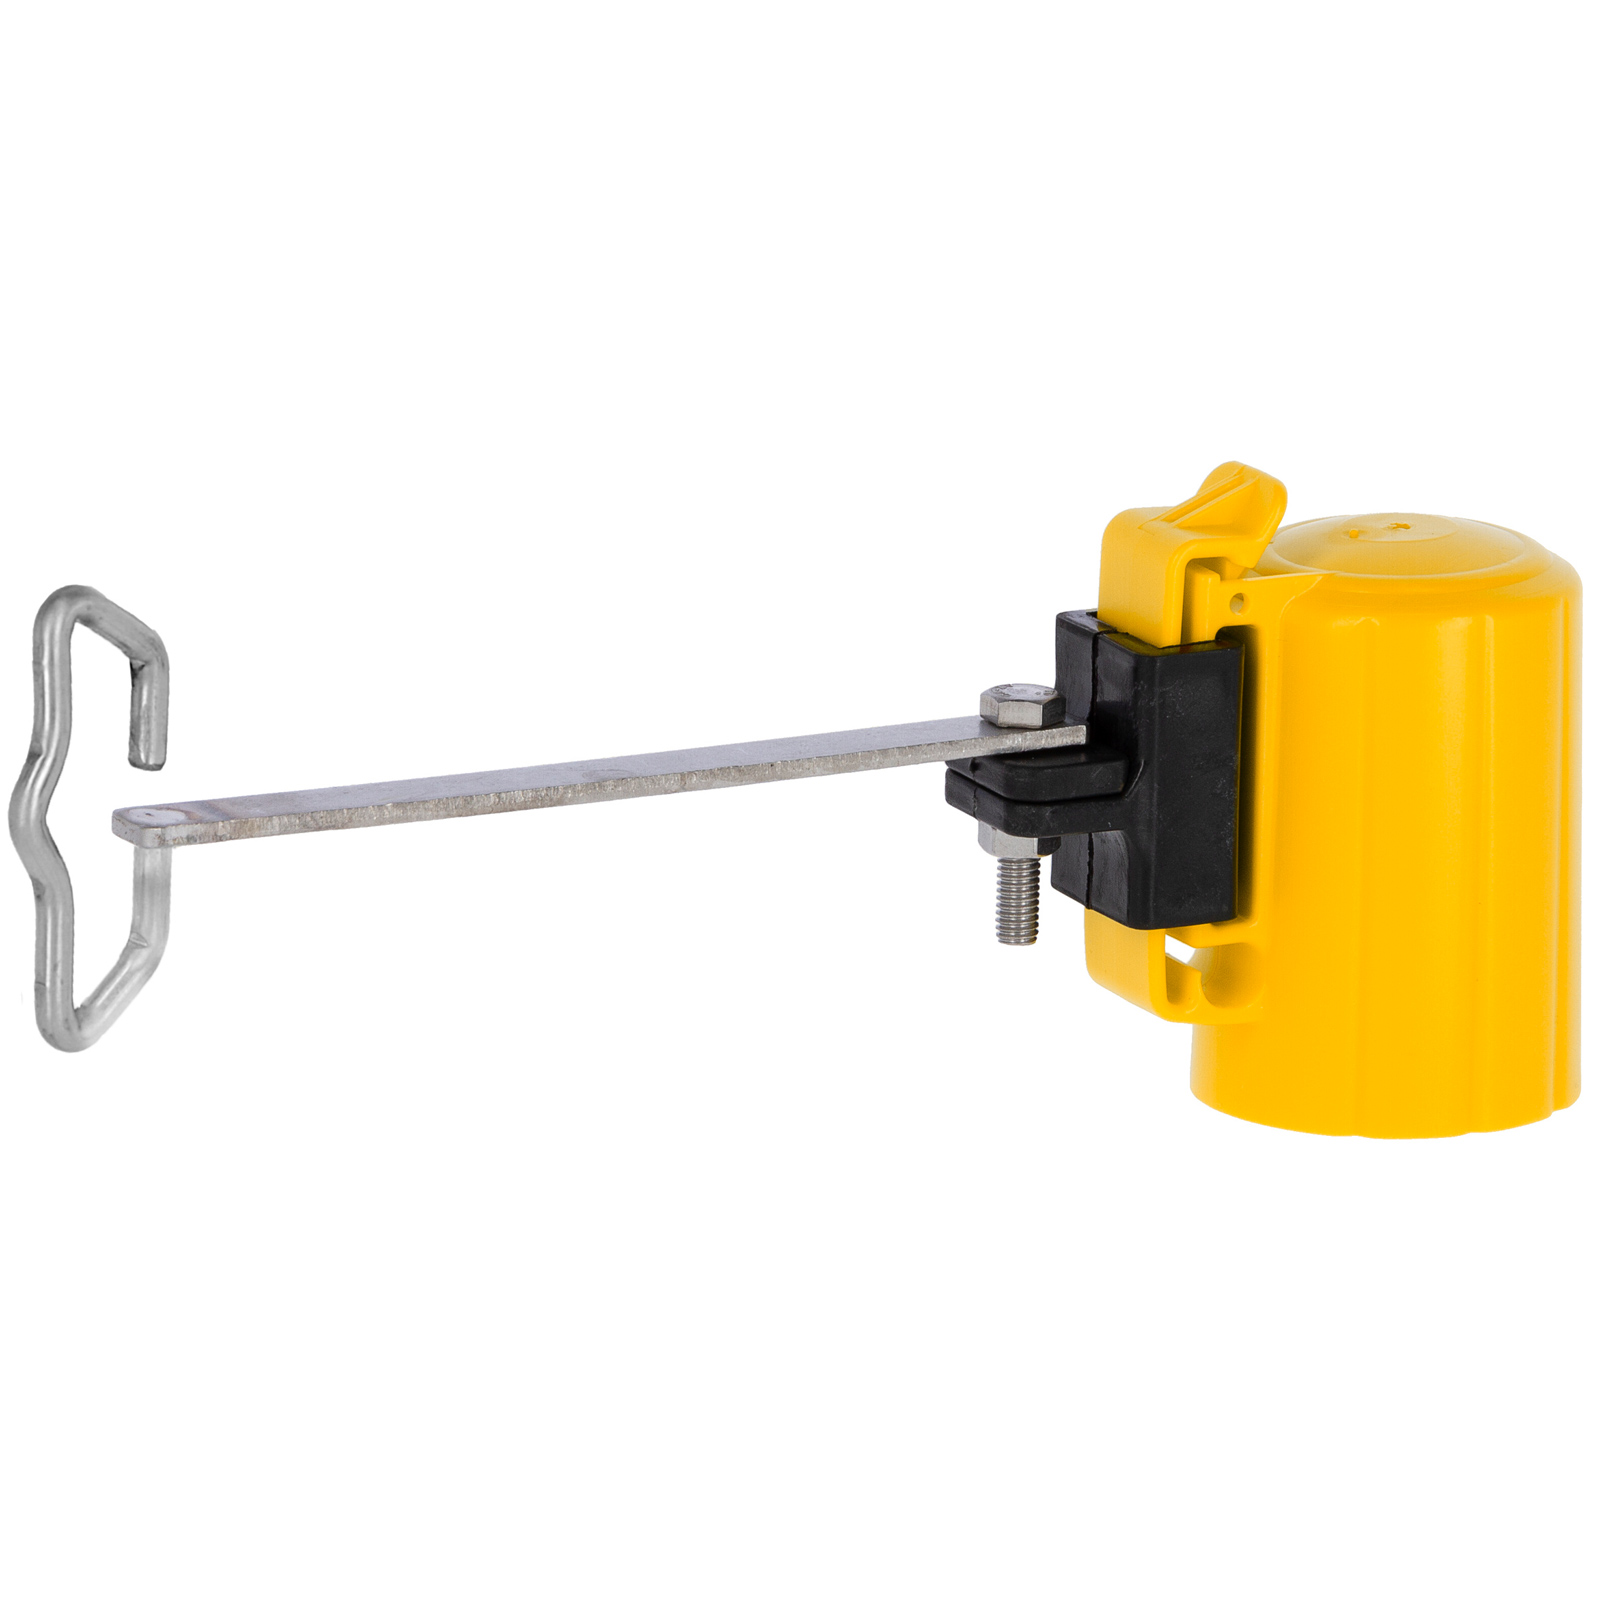 4x Isolateur de tête d'angle de clôture électrique pour rubans, cordes, fils sur T-Post jaune